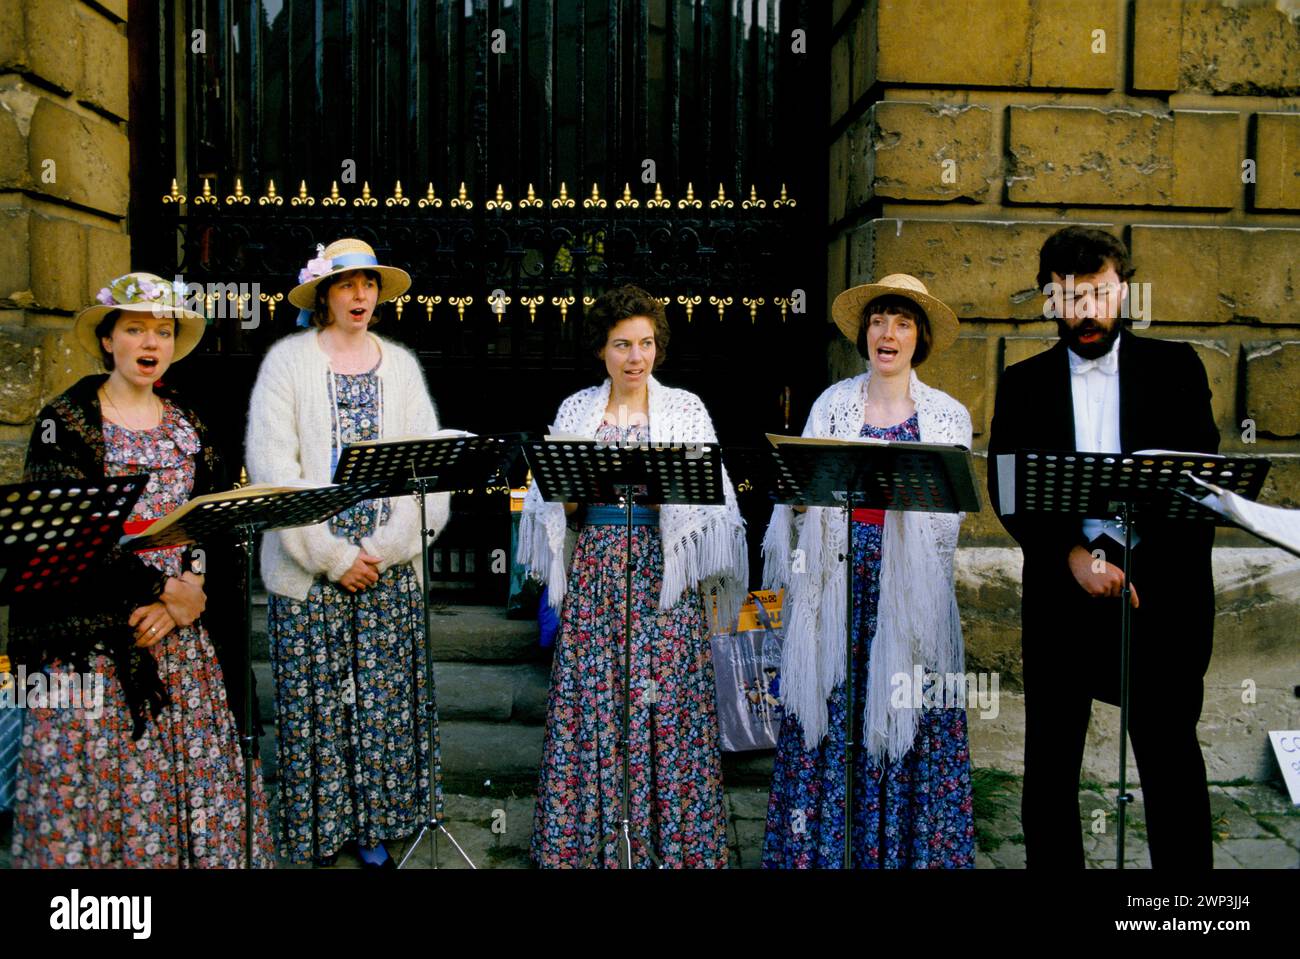 Il giorno di maggio all'alba, gli studenti universitari cantano madrigali per celebrare l'arrivo e l'arrivo della primavera. Oxford, Oxfordshire, Inghilterra 1 maggio 1997 1970s HOMER SYKES Foto Stock